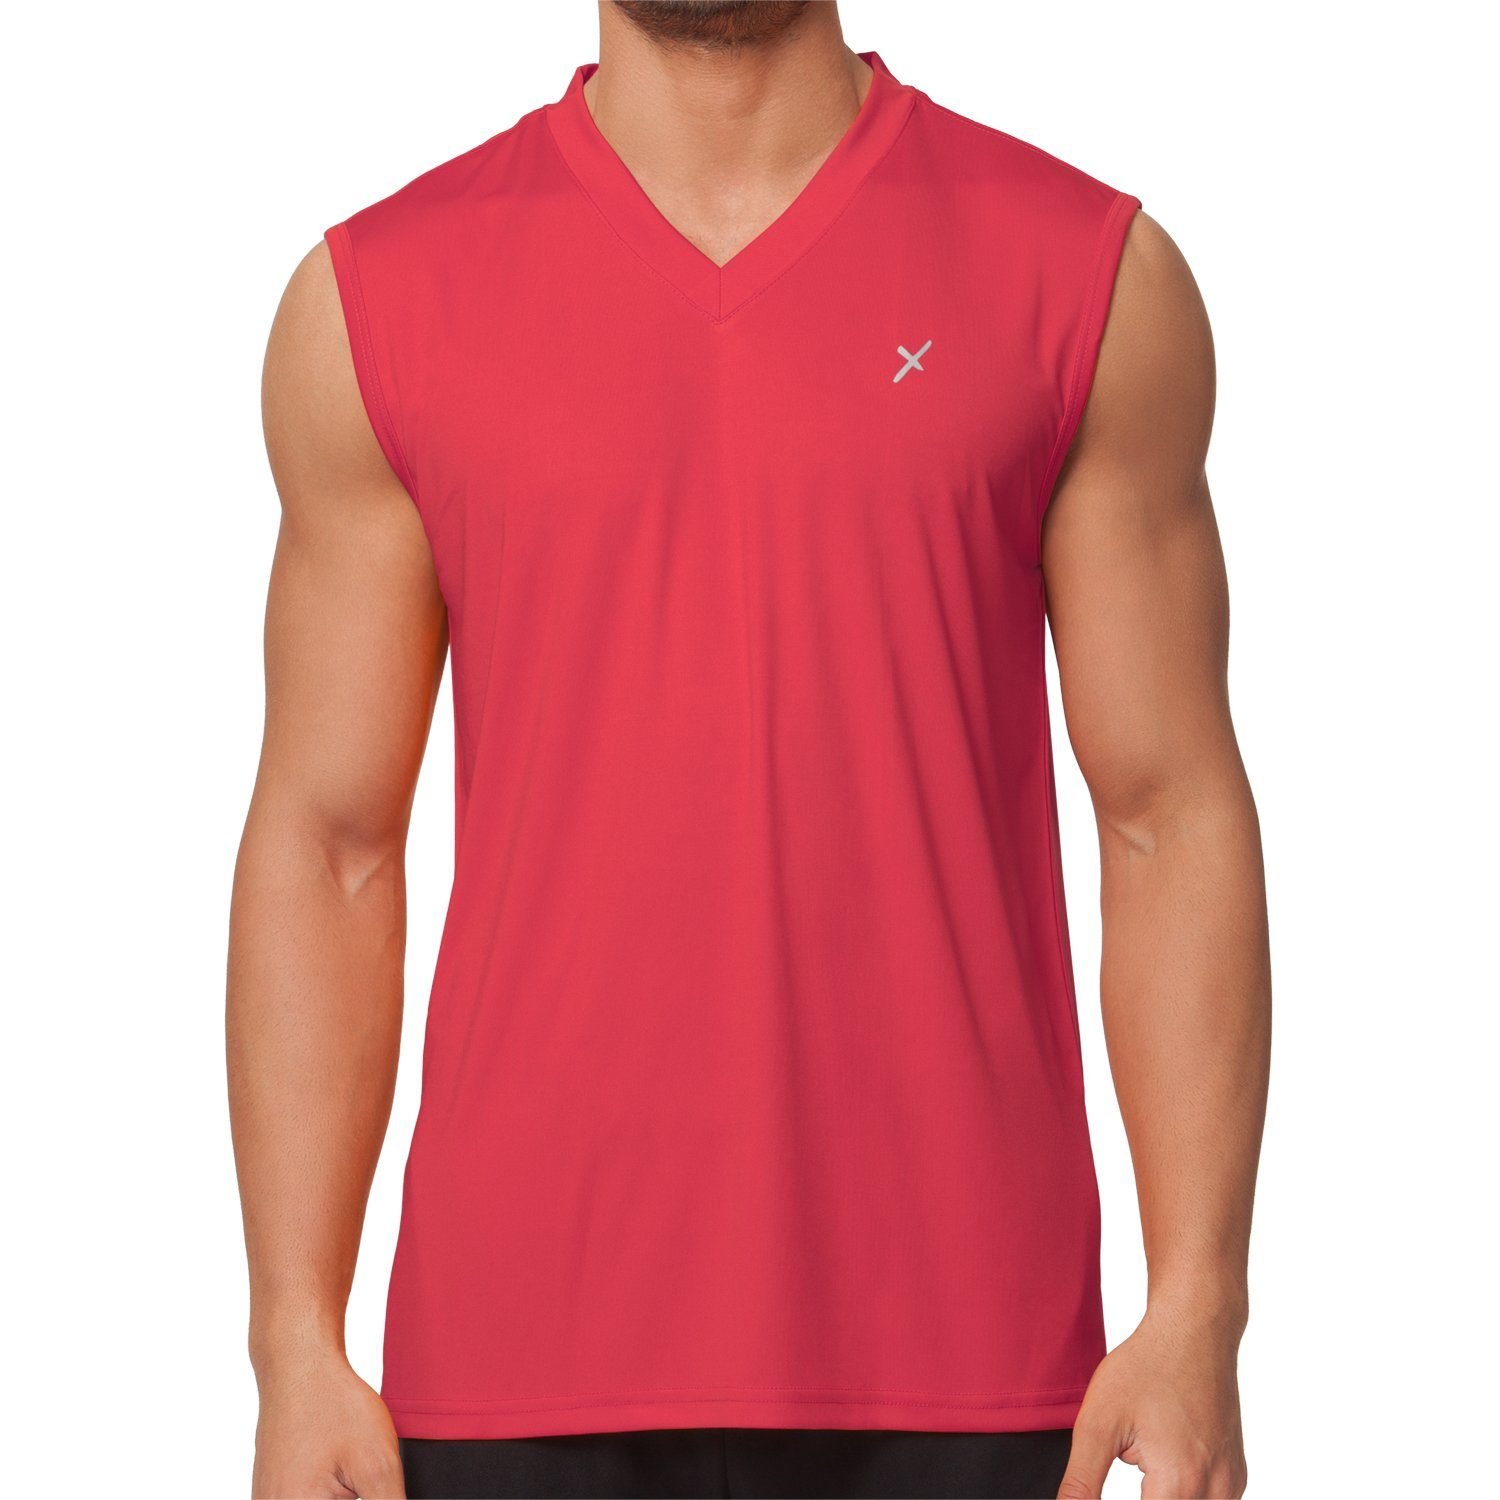 CFLEX Trainingsshirt Herren Sport Shirt Rot Collection Fitness Sportswear Muscle-Shirt